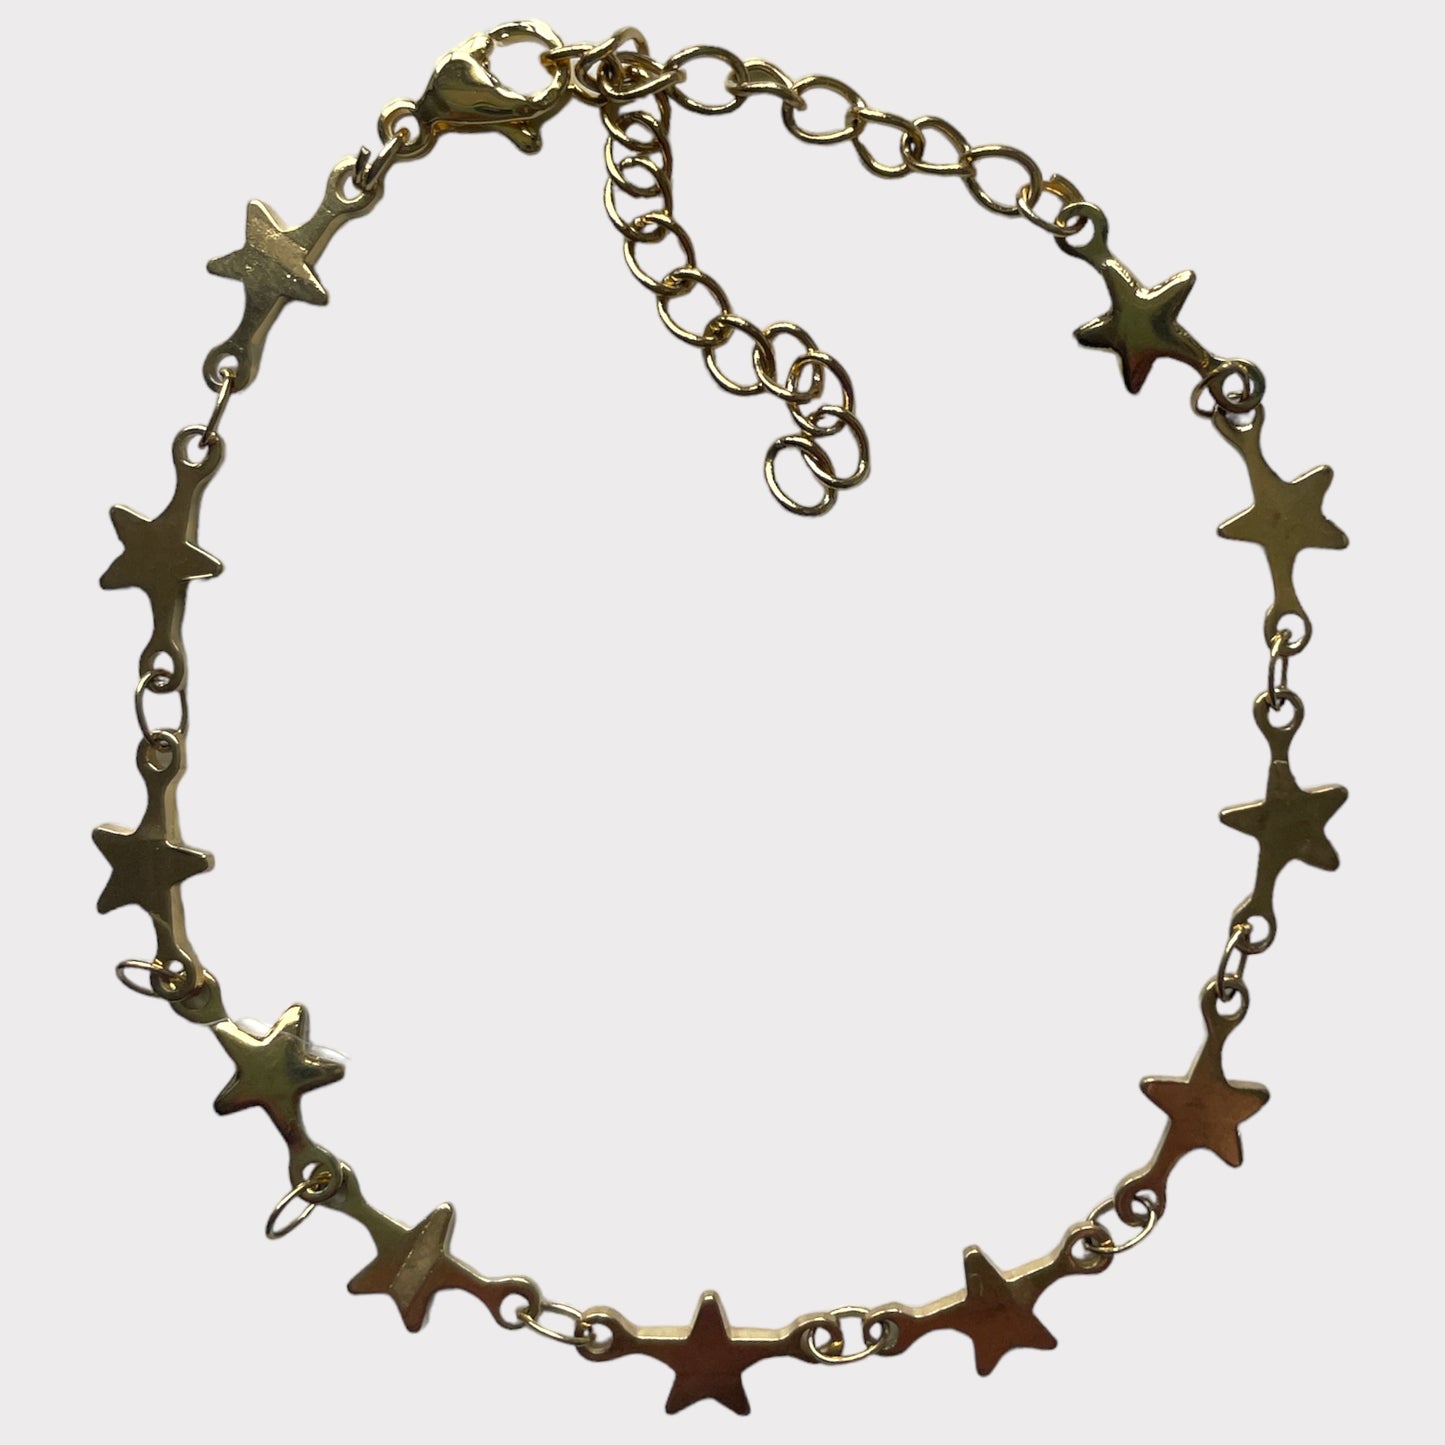 ‘SKY FULL OF STARS’ bracelet